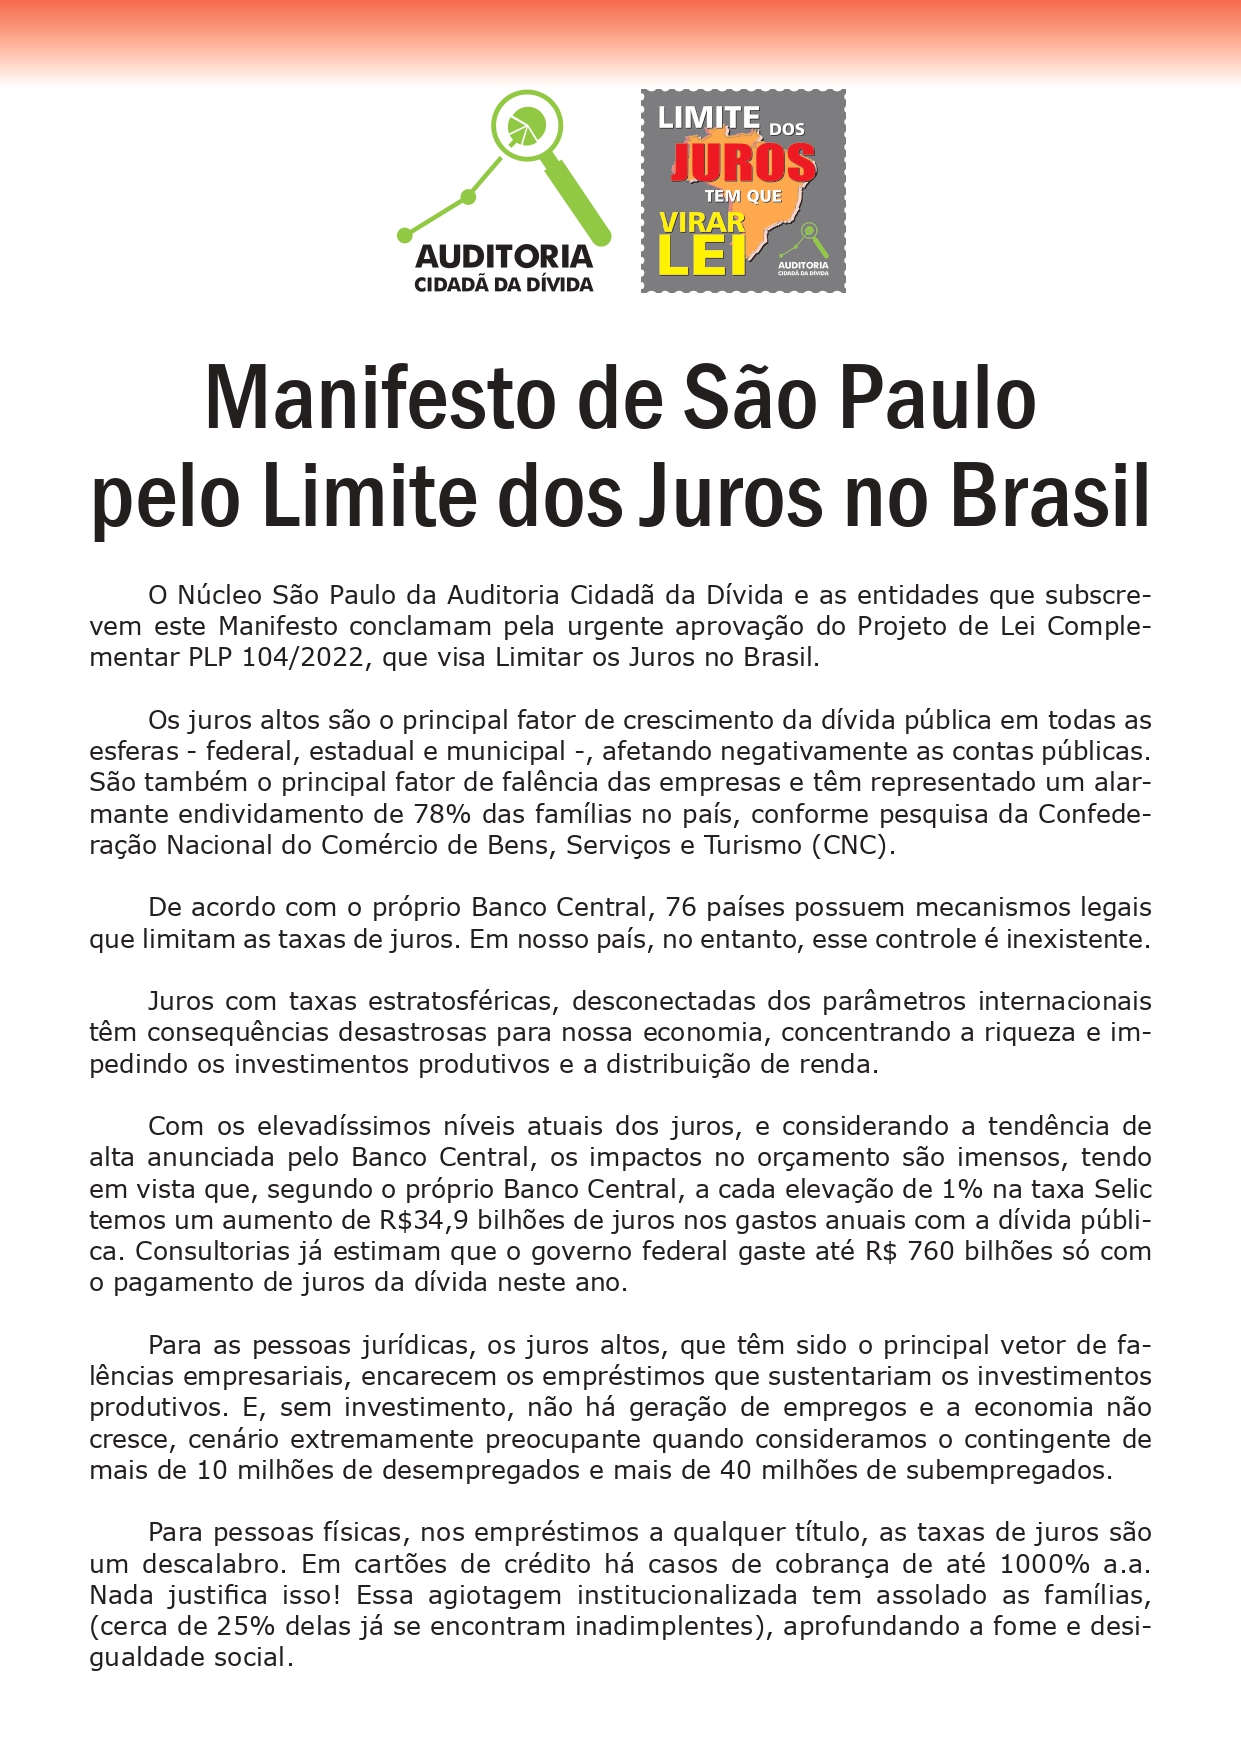 ASSINE AQUI - Manifesto de São Paulo pelo Limite dos Juros no